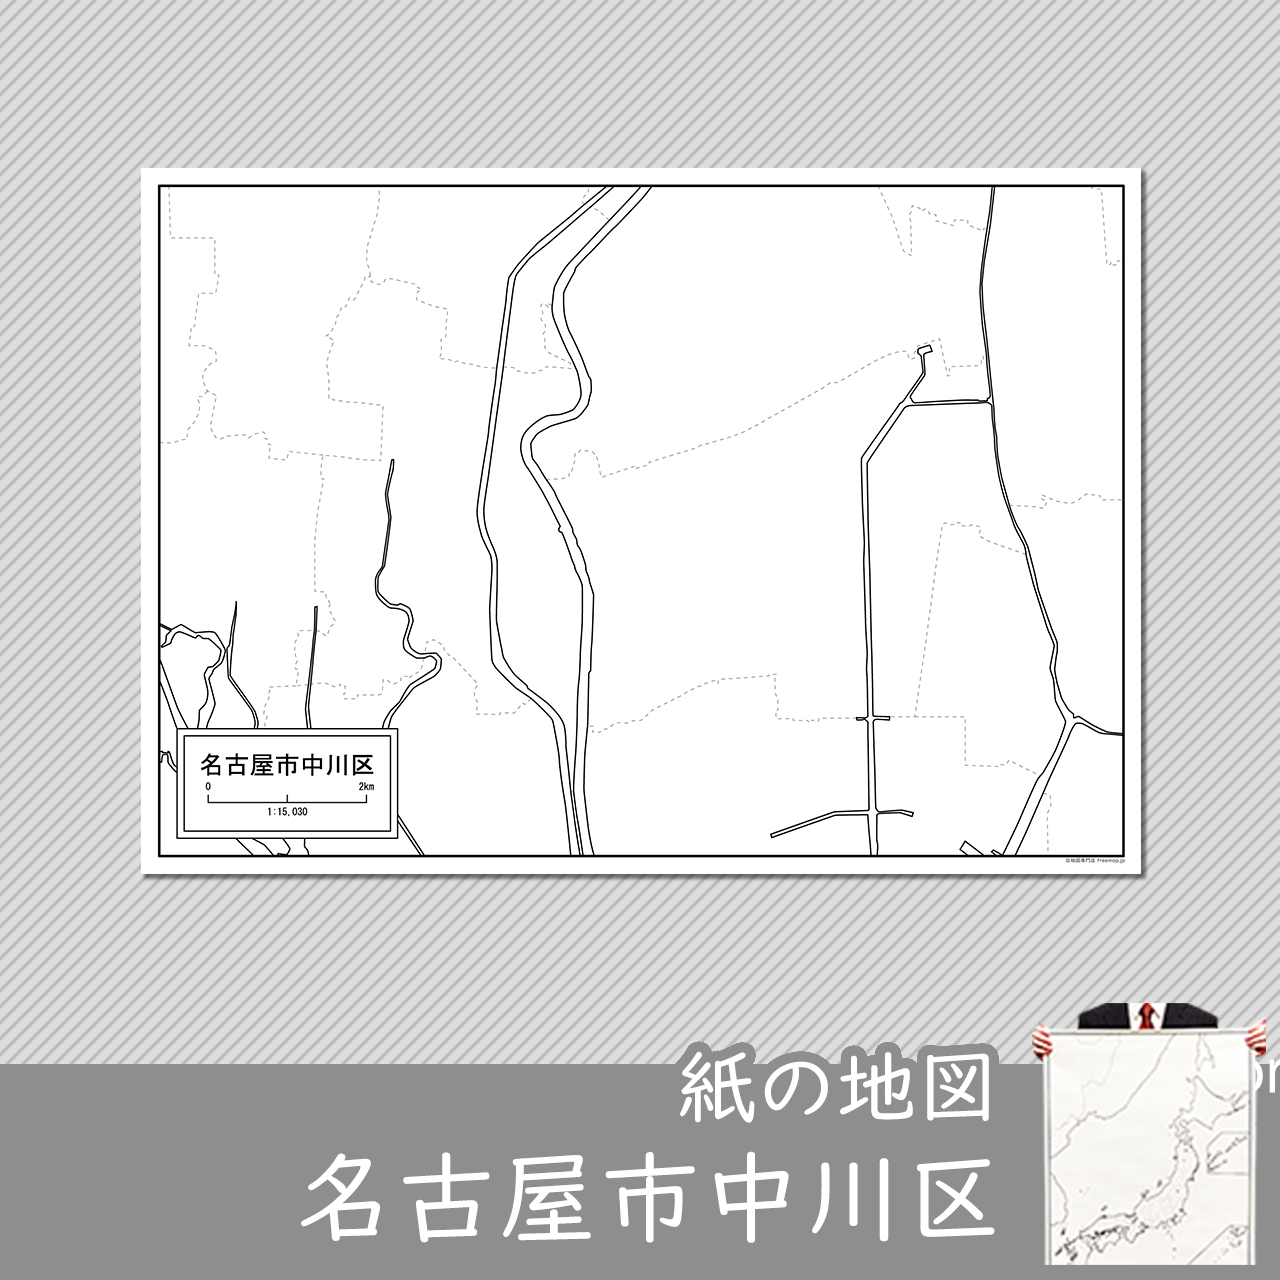 名古屋市中川区の紙の白地図のサムネイル